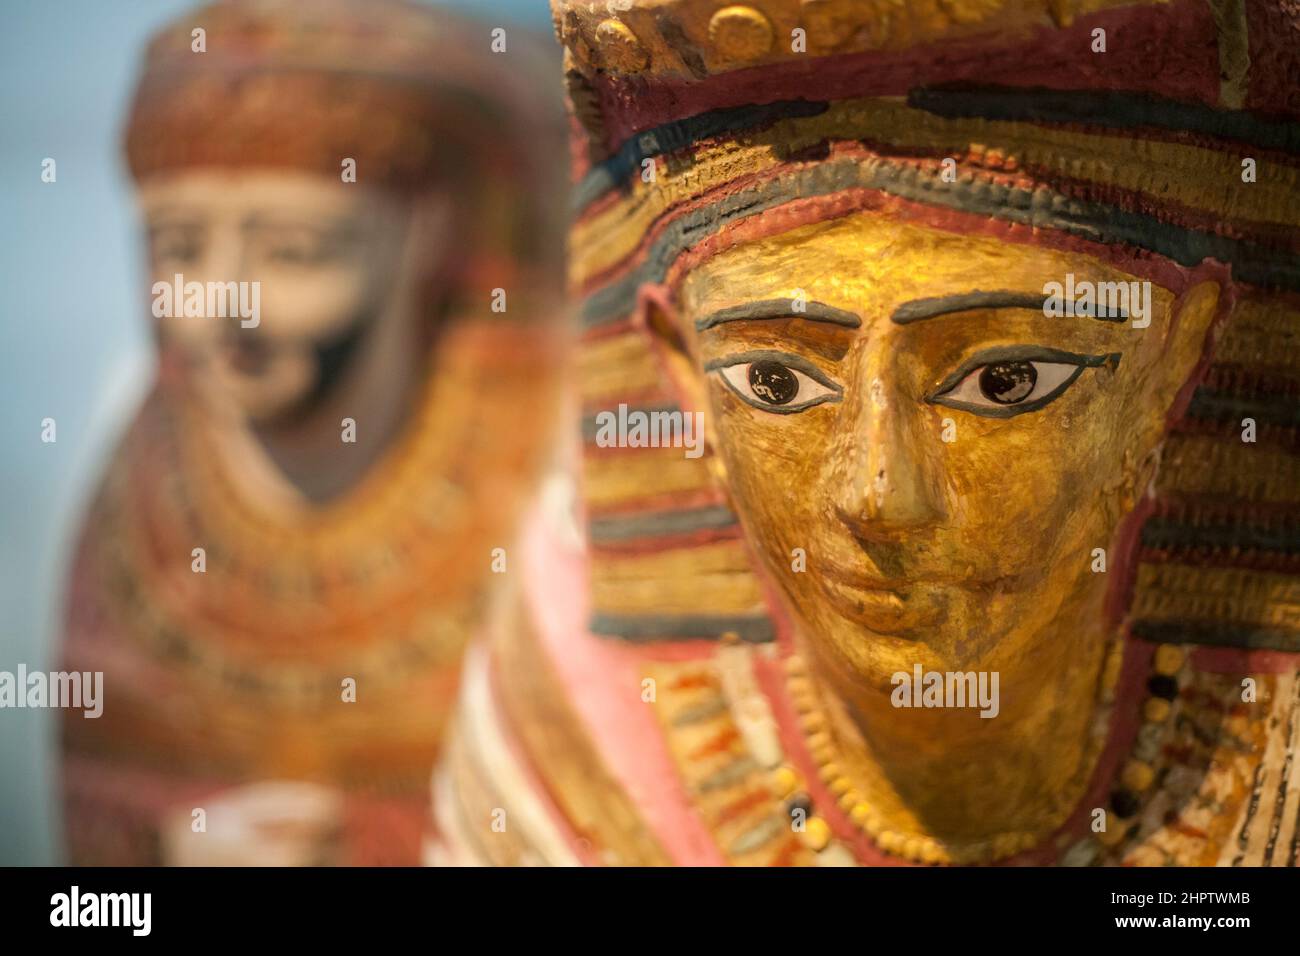 Esculturas de la cubierta de la mami egipcia en el Museo Británico: La cara de una mujer con una escultura de mle en el fondo forma parte de la exposición sobre artefactos egipcios antiguos en el Museo Británico. Foto de stock